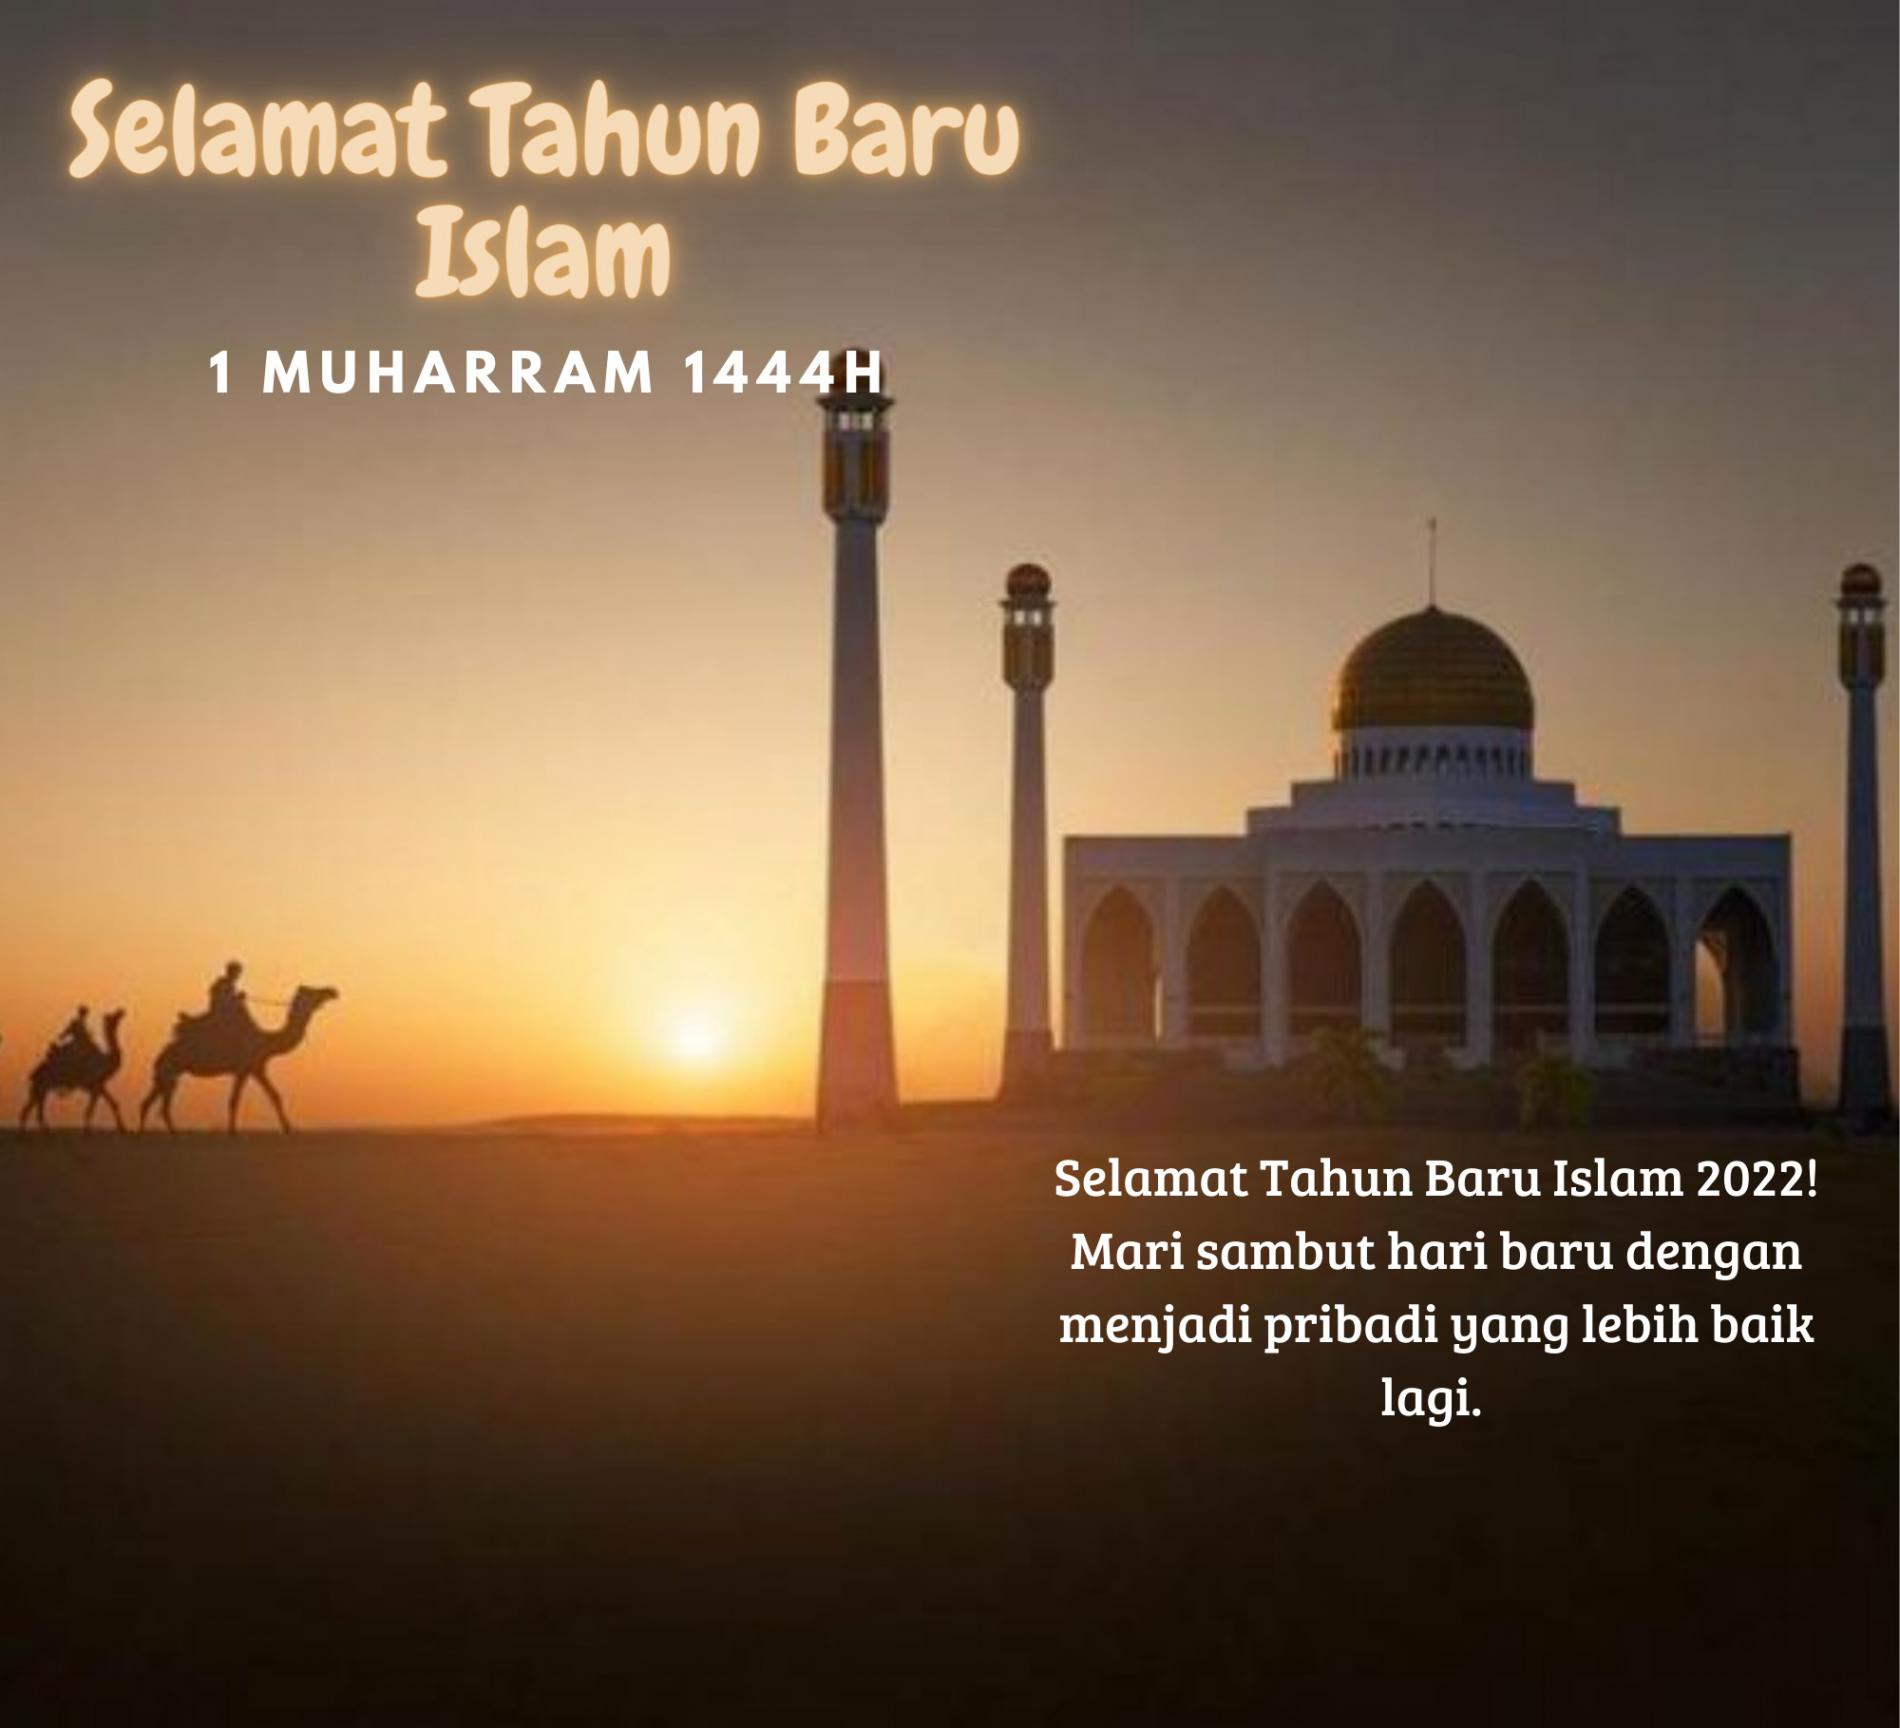 KUMPULAN LINK Twibbon dan Gambar Tahun Baru Islam 2022/1 Muharram 1444 H  